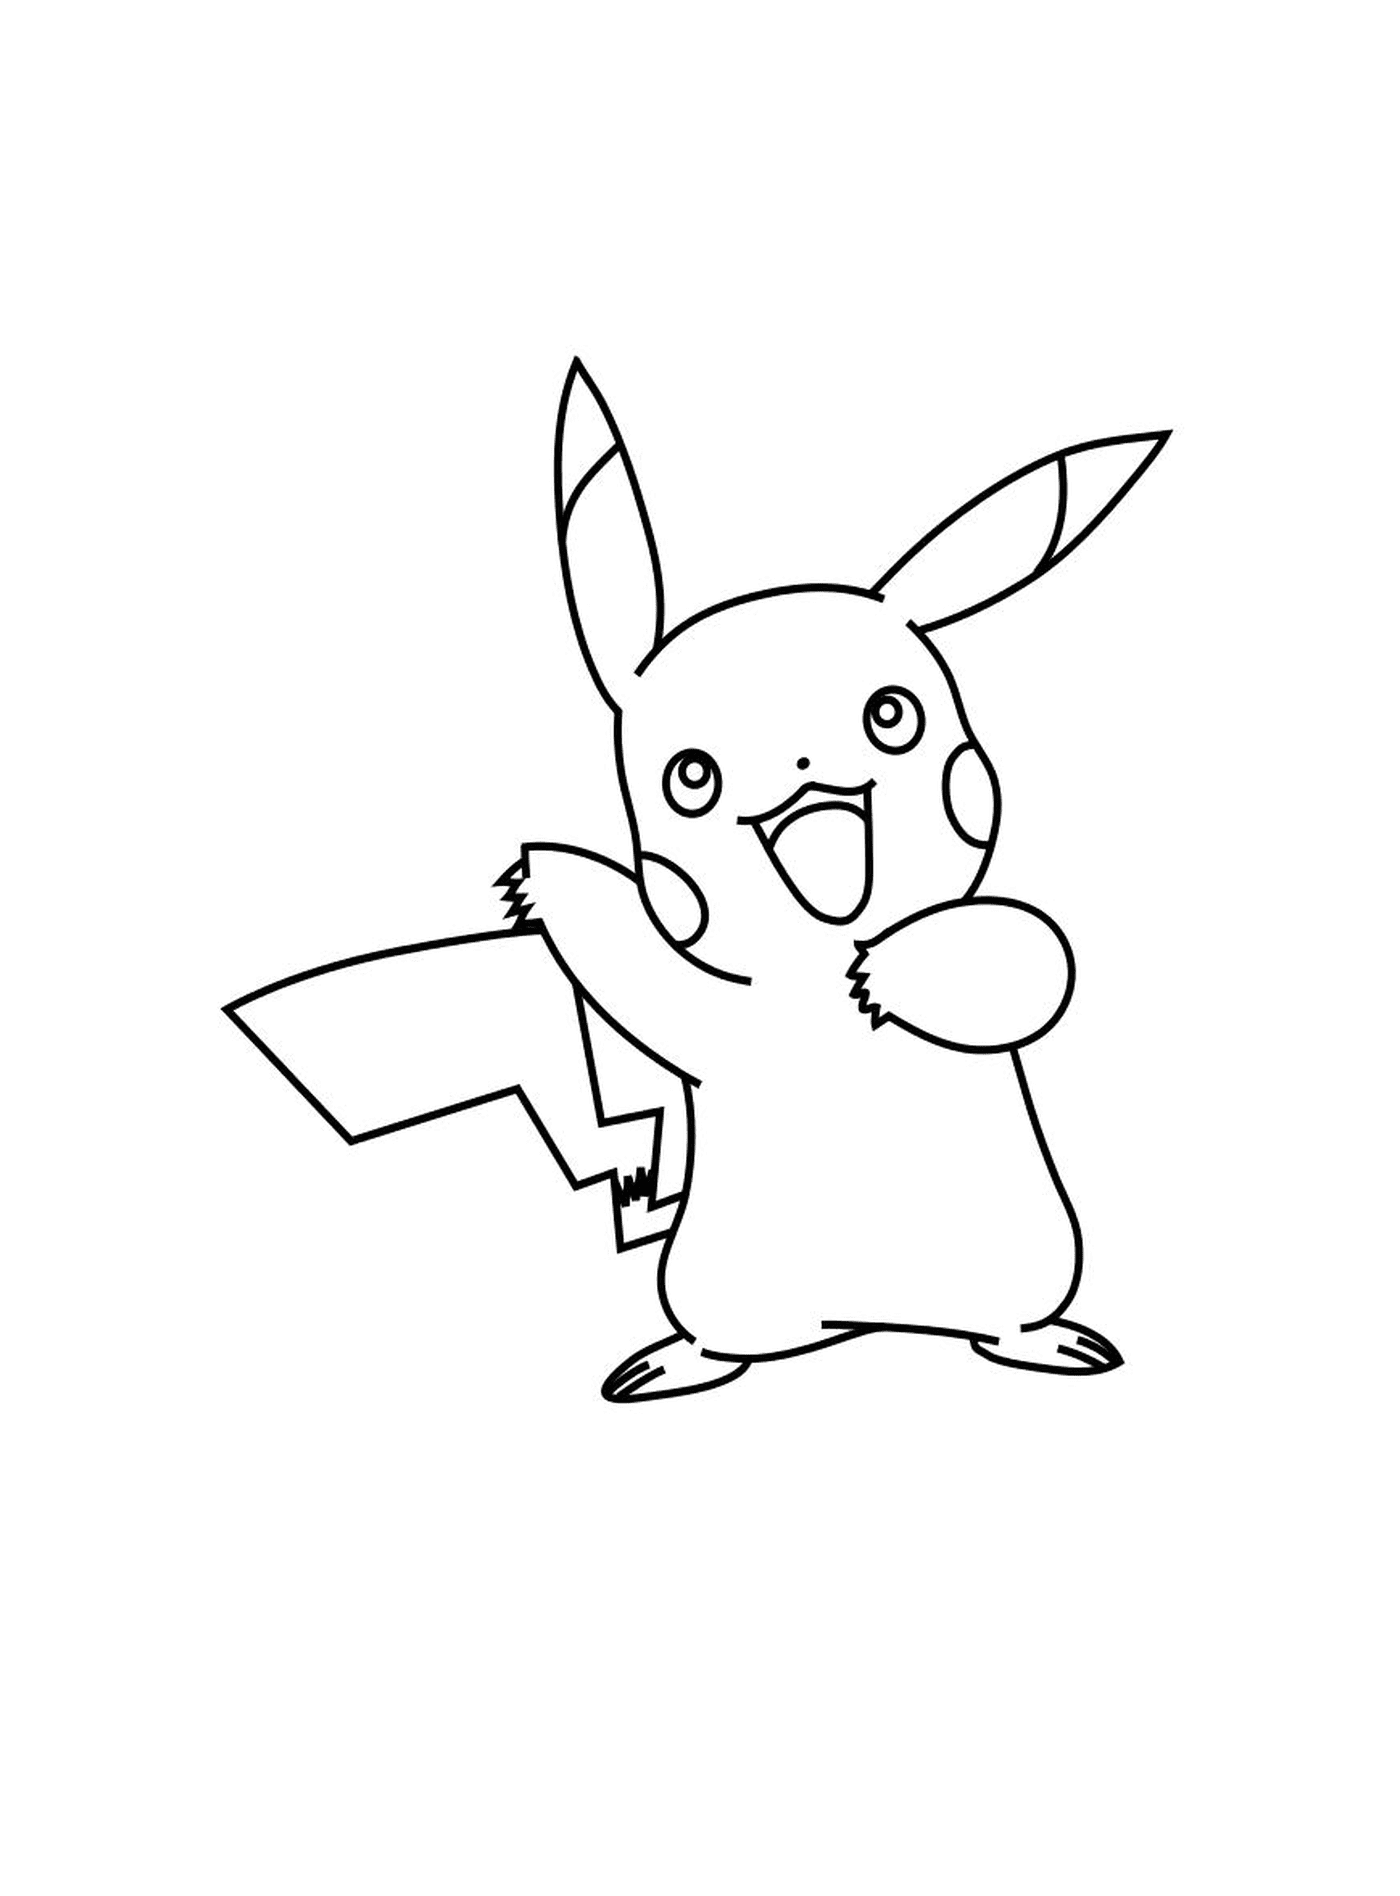 pikachu pokemon xy